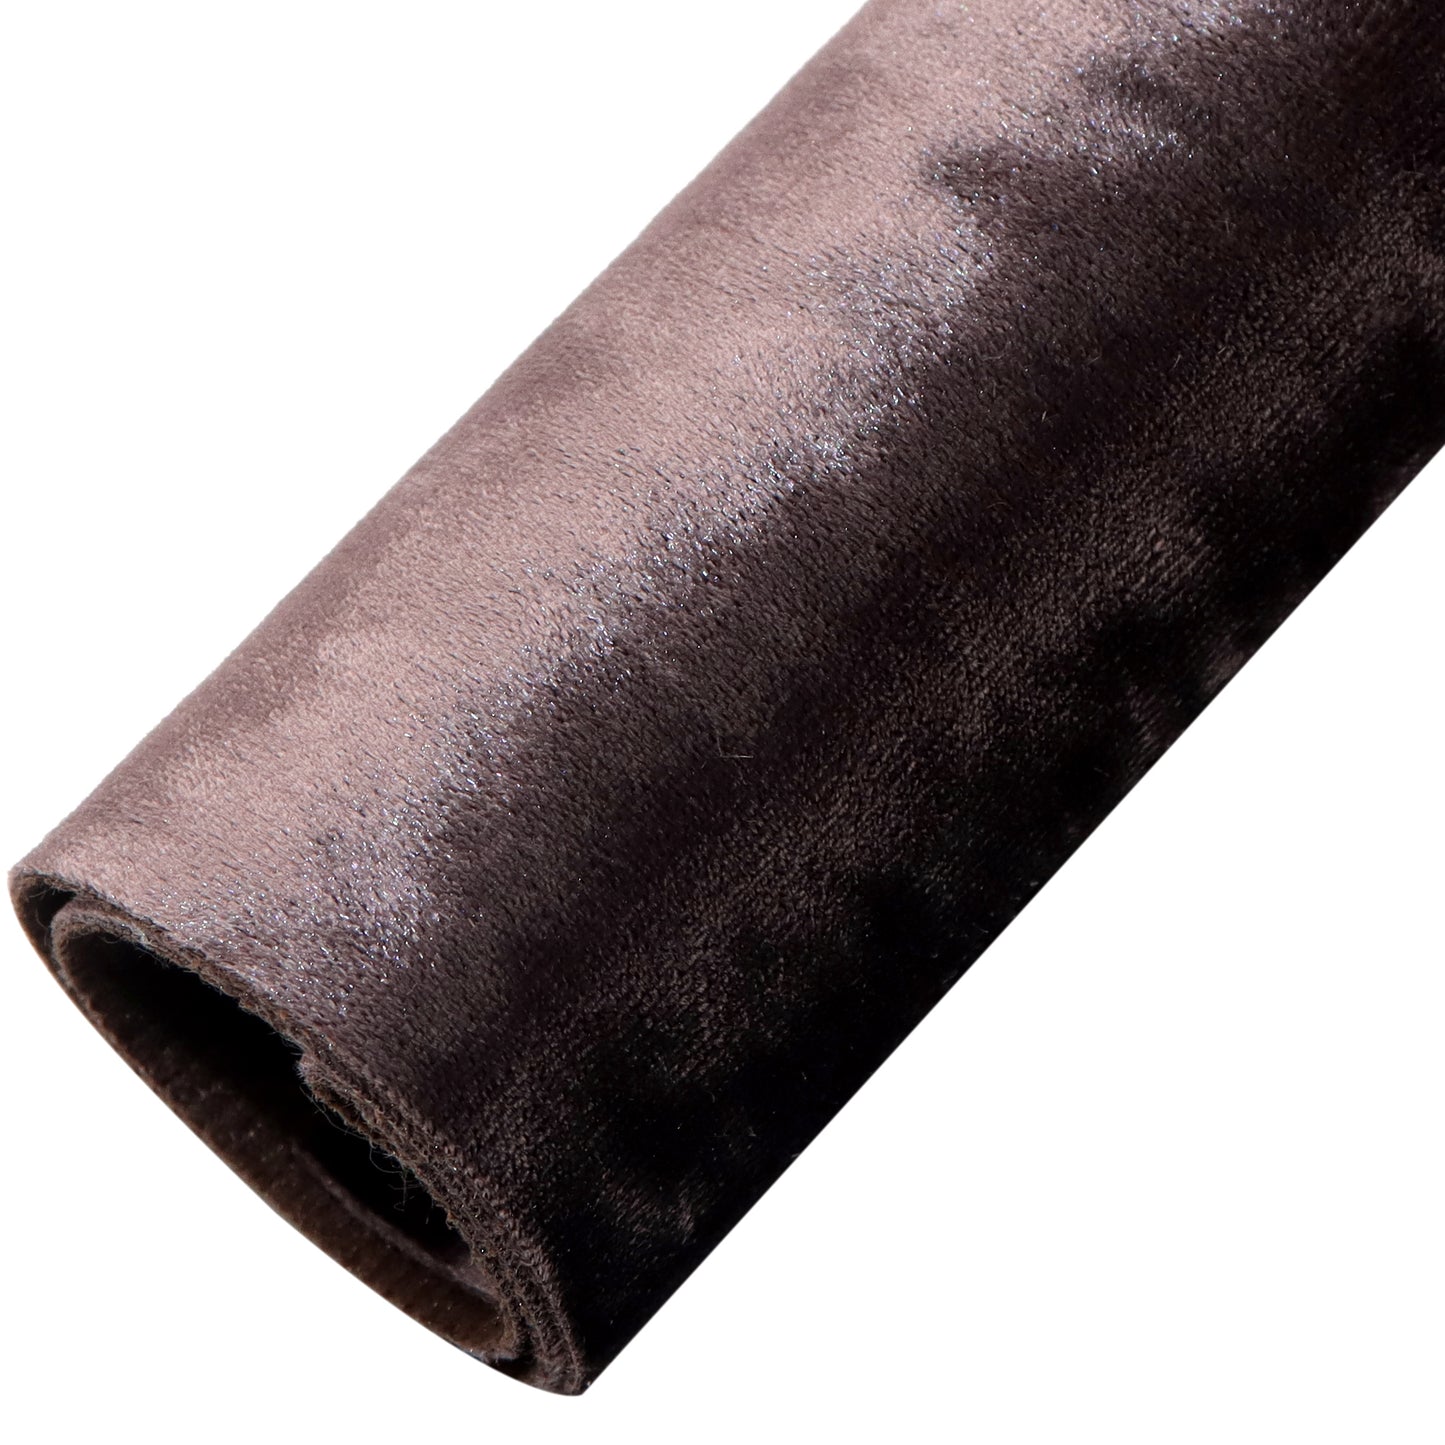 Velvet Faux Leather Sheets Wholesale